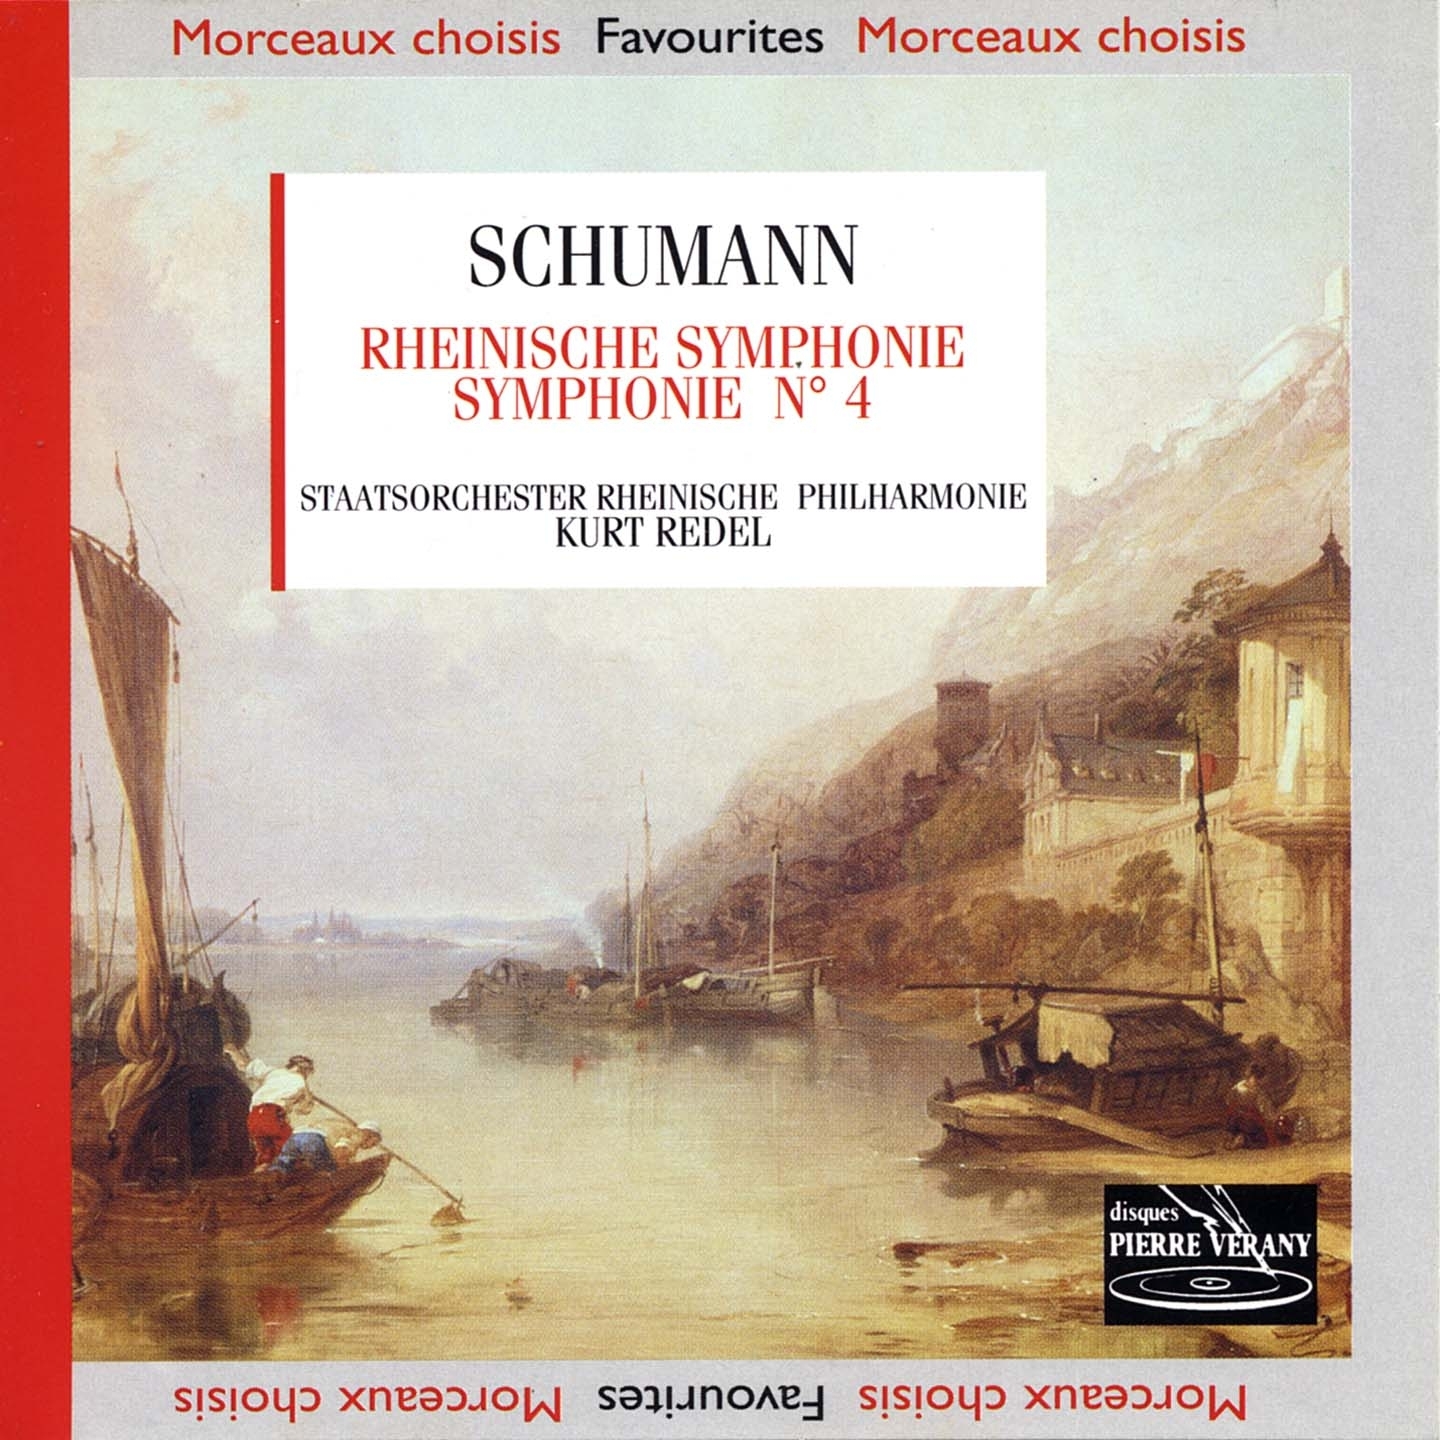 Symphonie n 4 en re mineur, Op. 120: Introduction